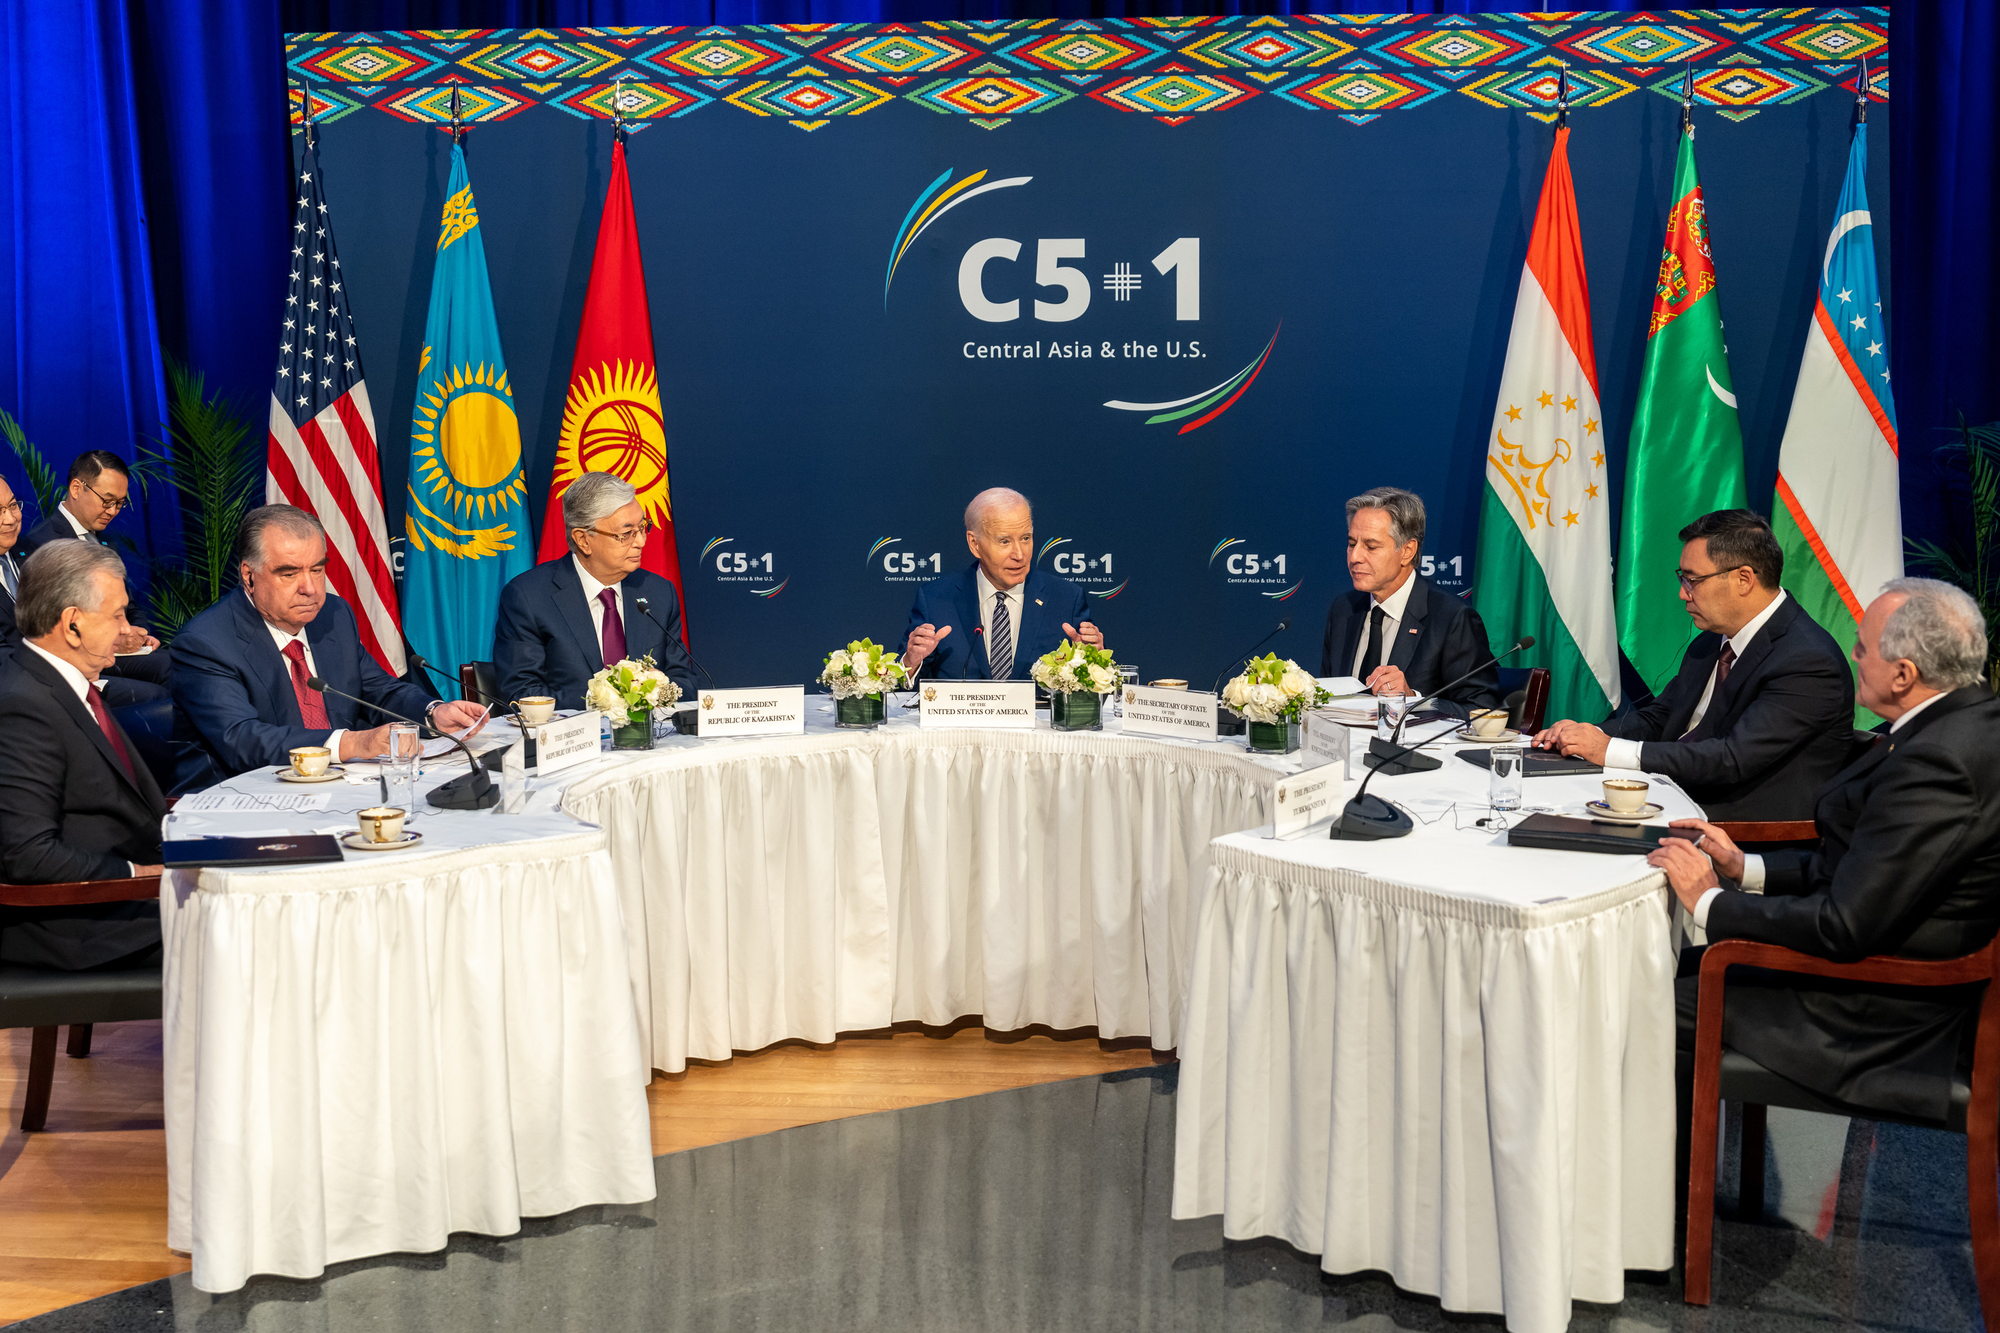 Границы, инвестиции, добыча минералов, визит в регион — что еще обсудил Джо Байден на встрече с лидерами Центральной Азии